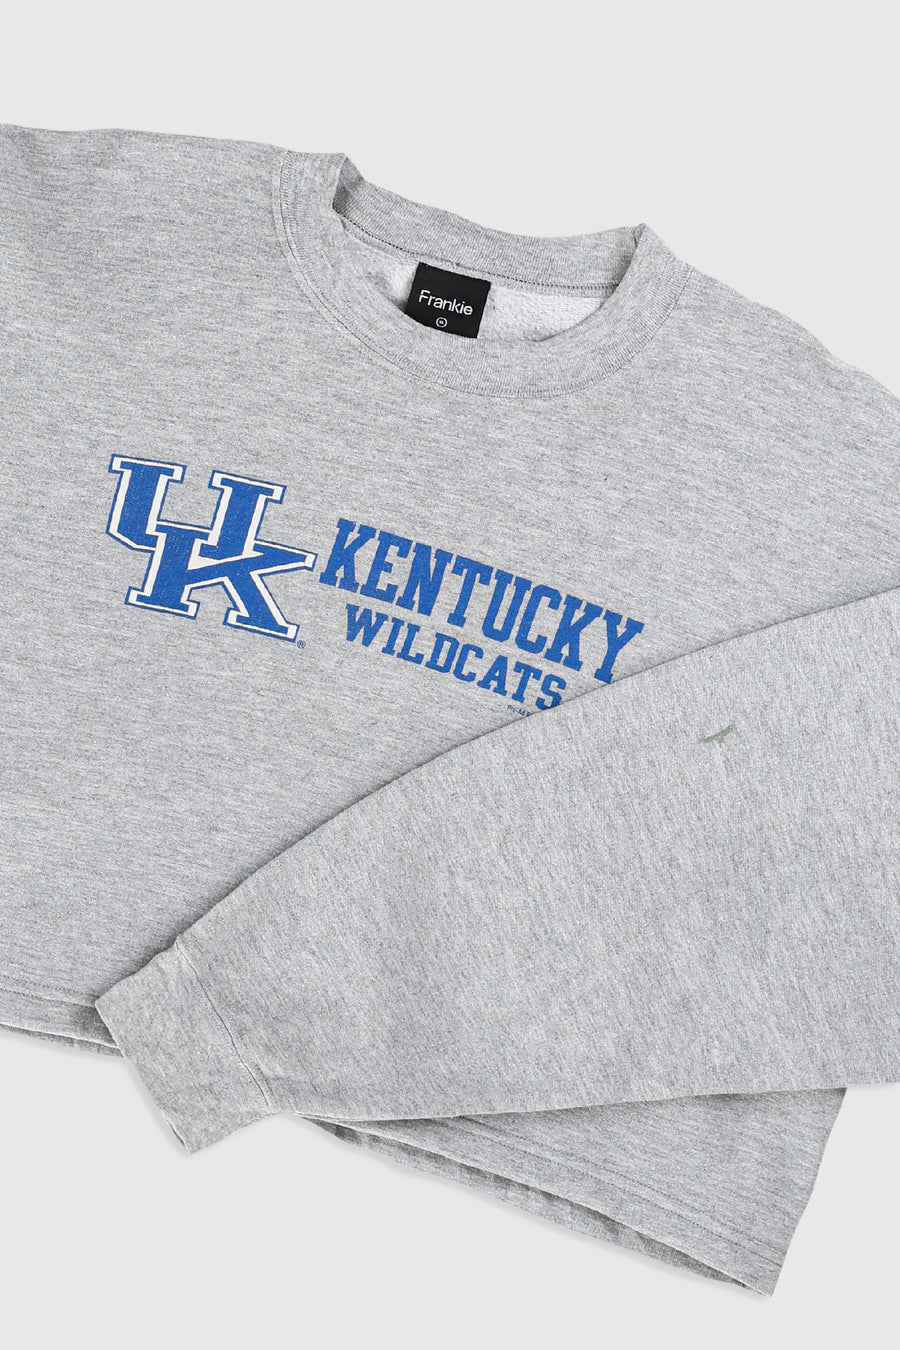 Rework Kentucky Wildcats Crop Sweatshirt - XL